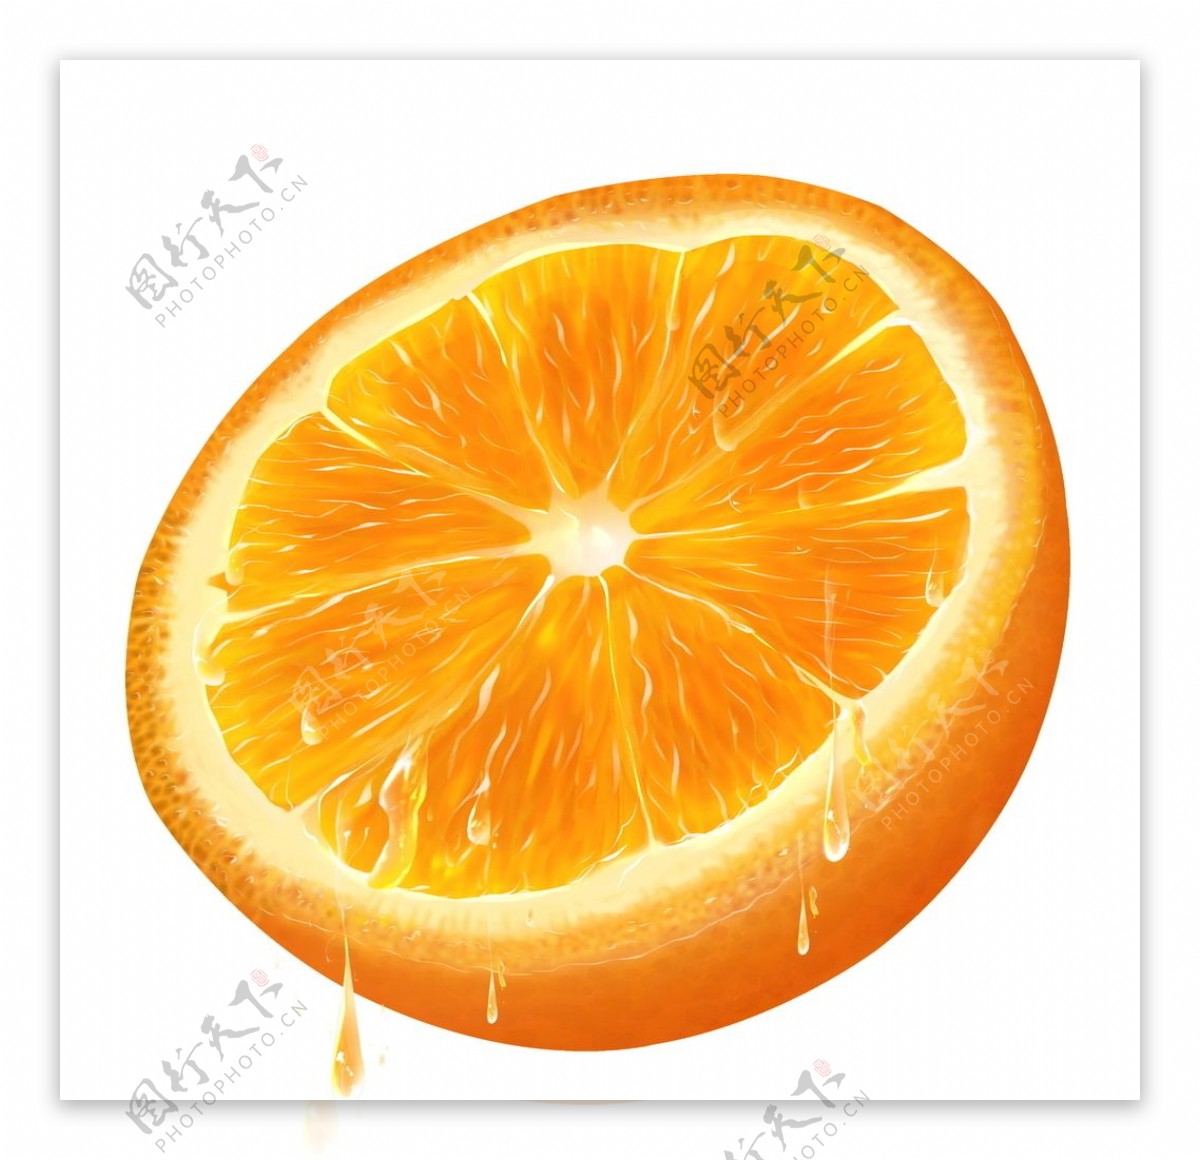 切片橙子